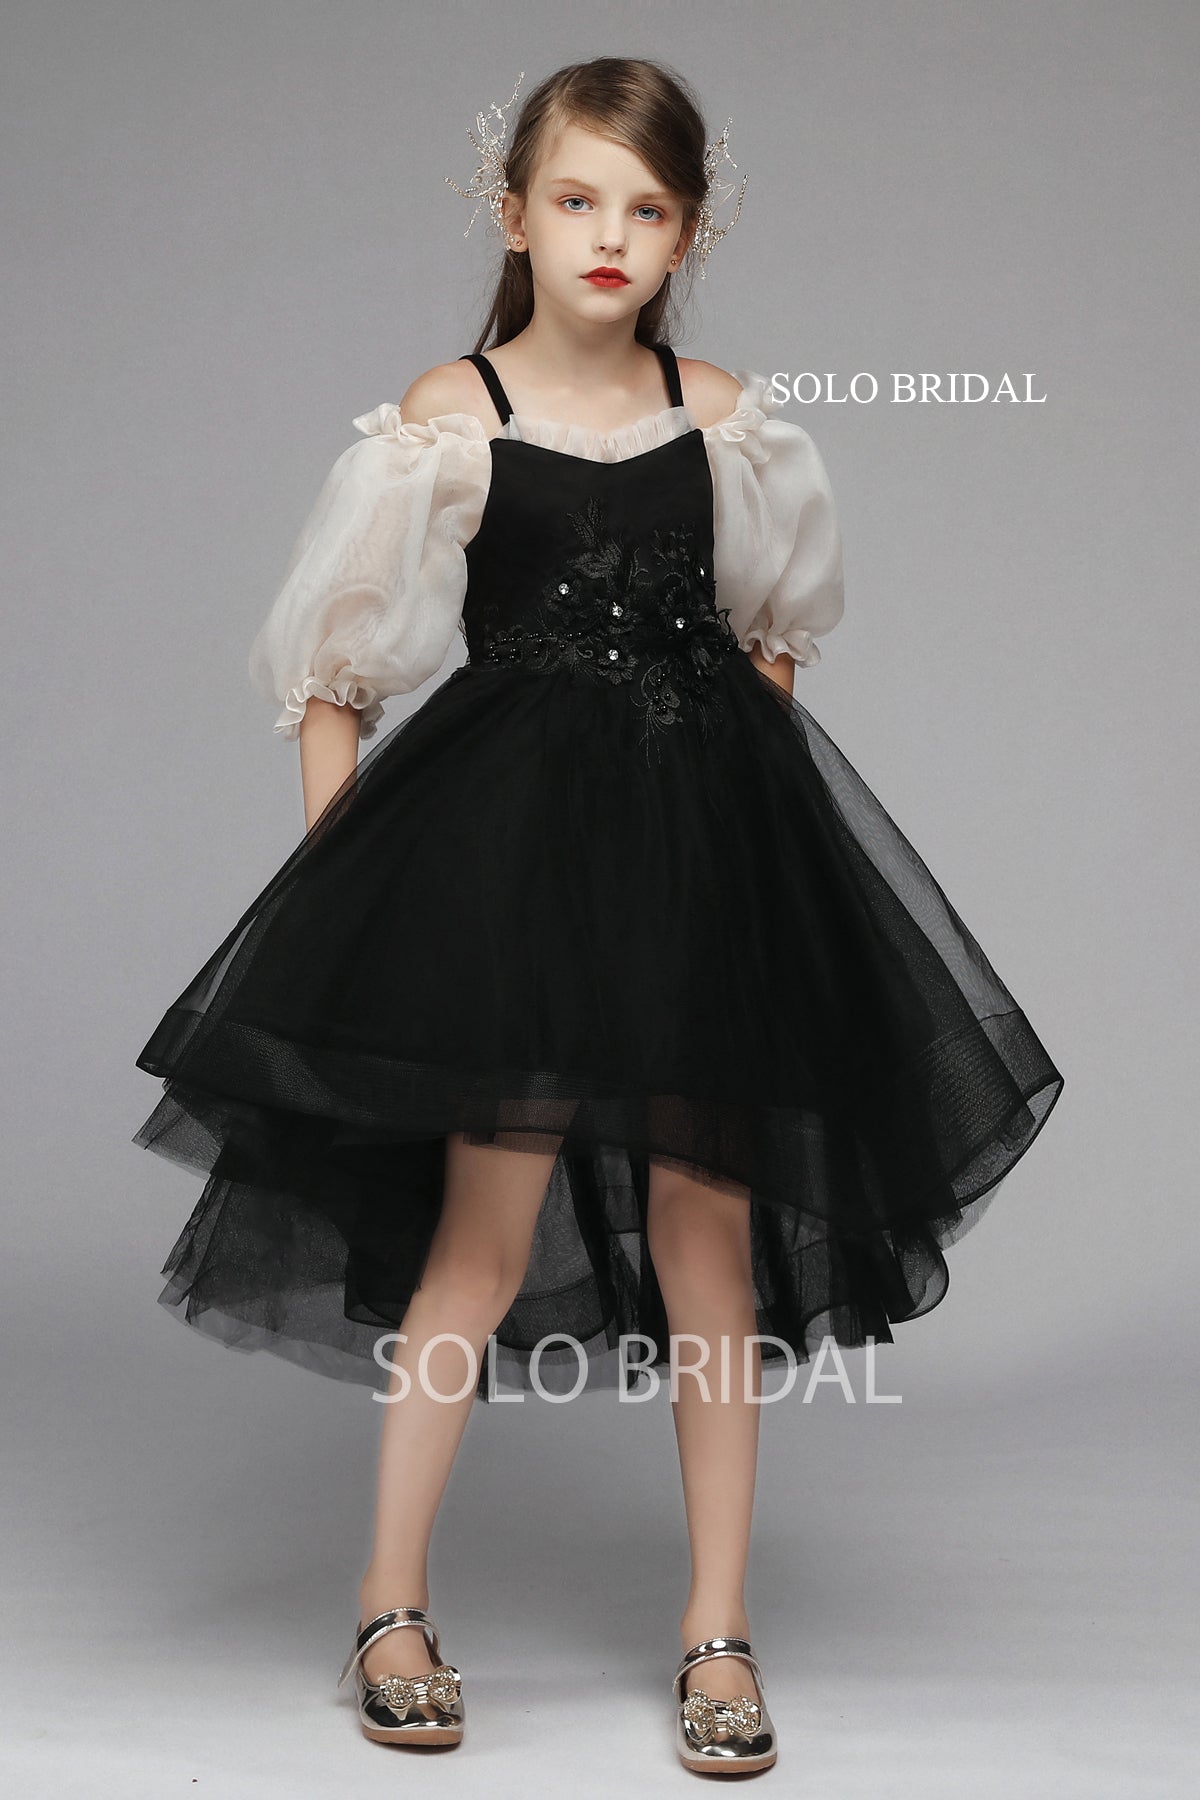 Black Ball Gown Flower Girl Dress